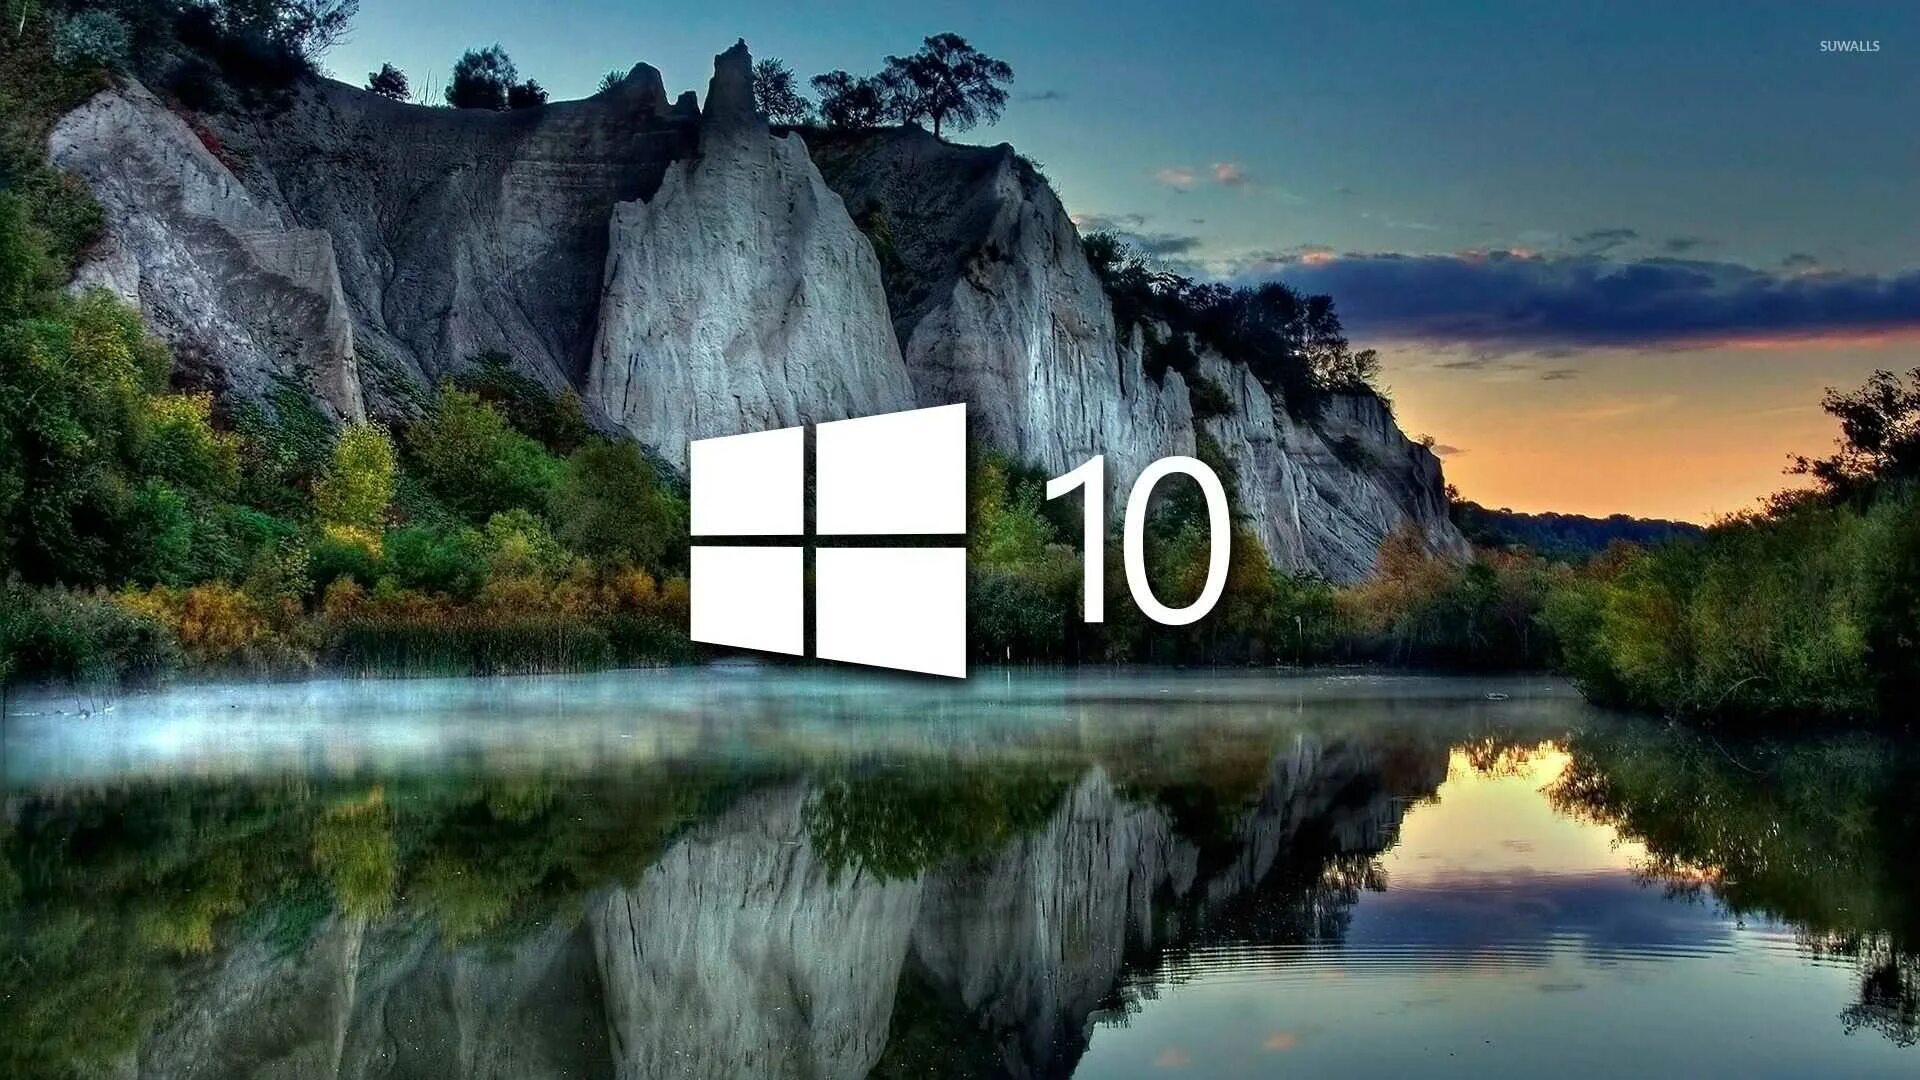 Красивая заставка виндовс 10. Фоновый рисунок виндовс 10. Рисунок рабочего стола Windows 10. Картинка для фона рабочего стола Windows 10.